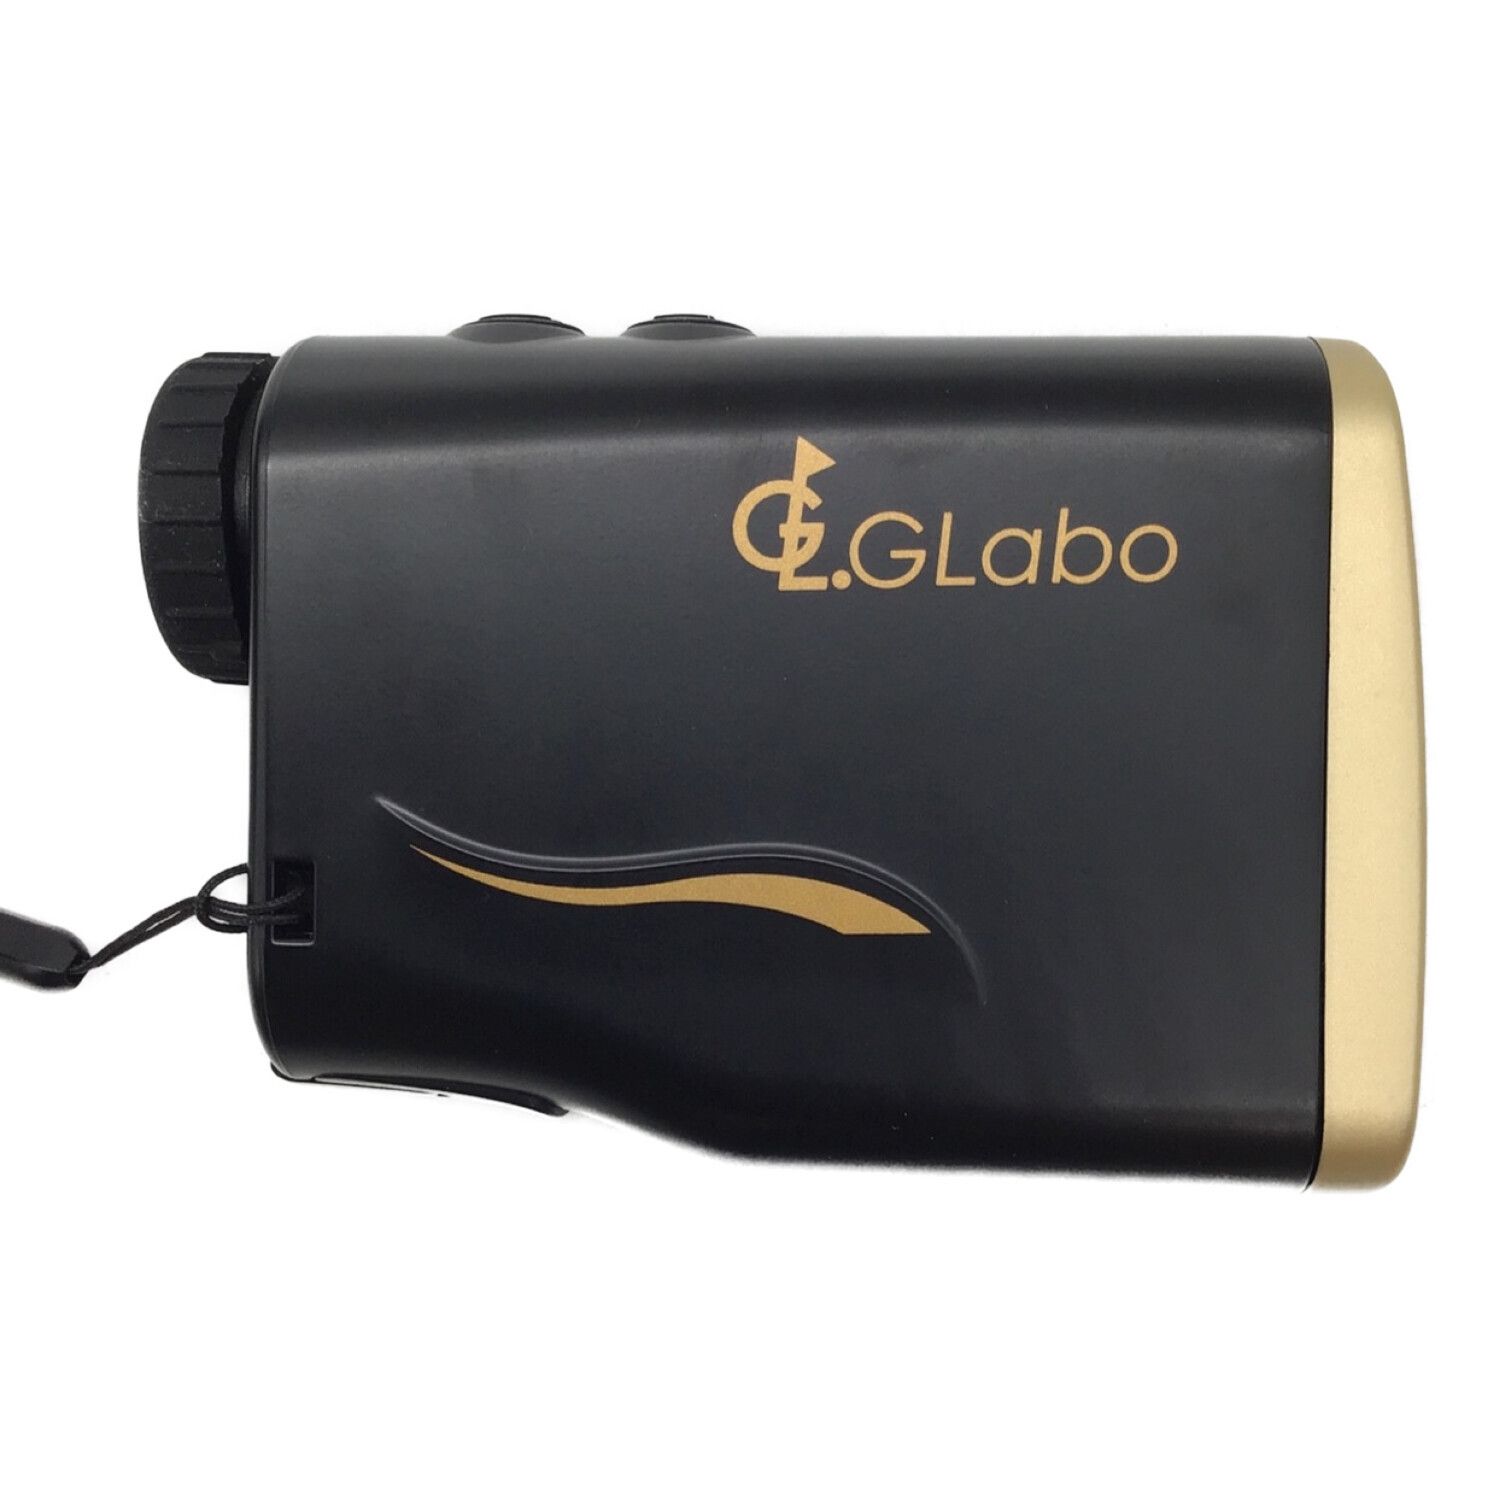 ゴルフ レーザー距離測定器 GLabo - ゴルフ